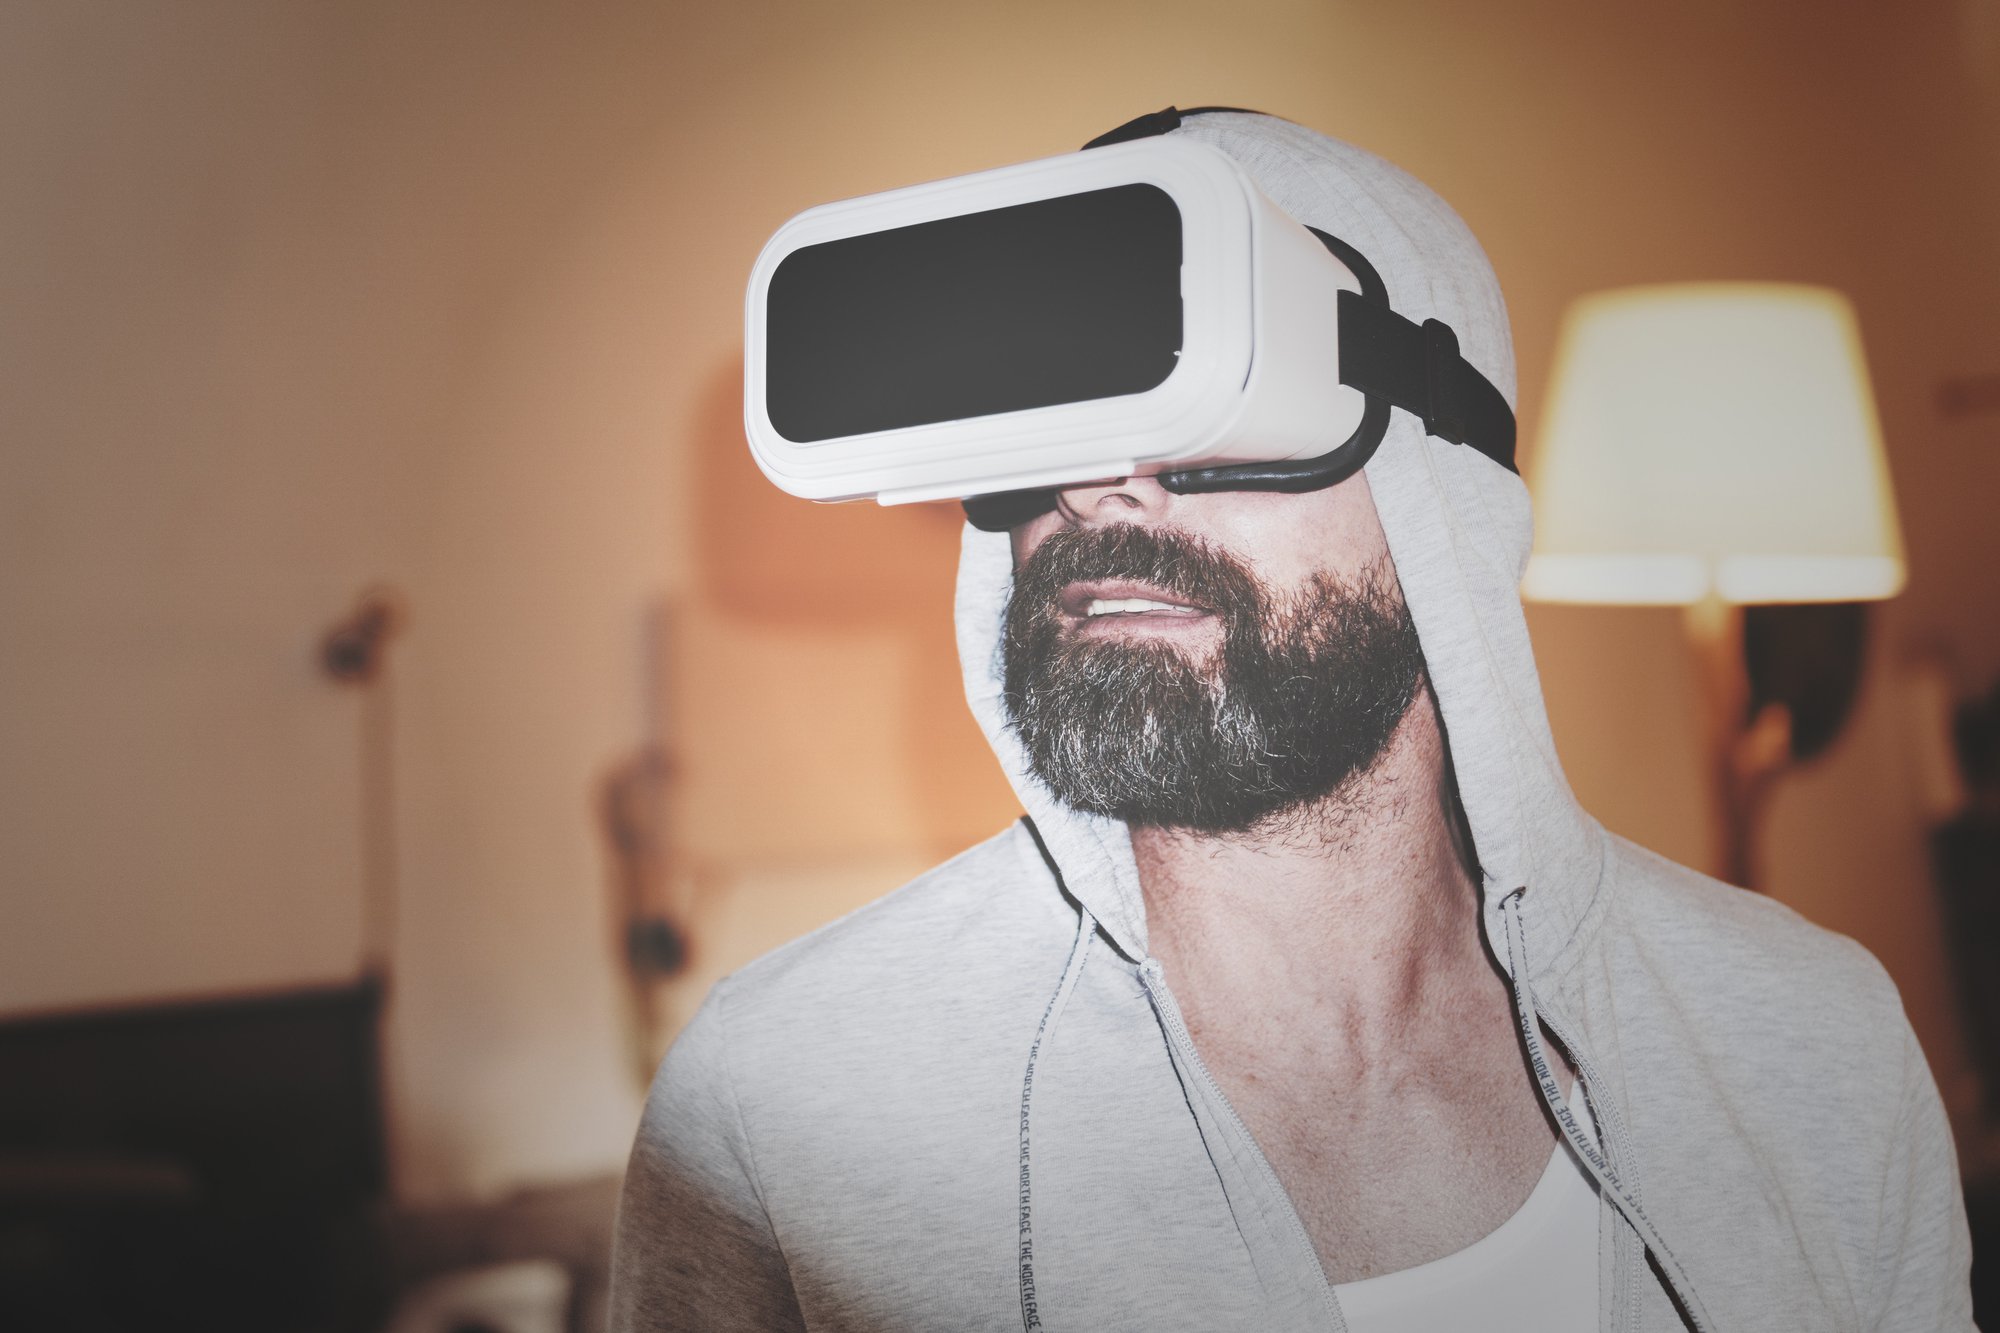 Les meilleures expériences de réalité virtuelle sur PS4